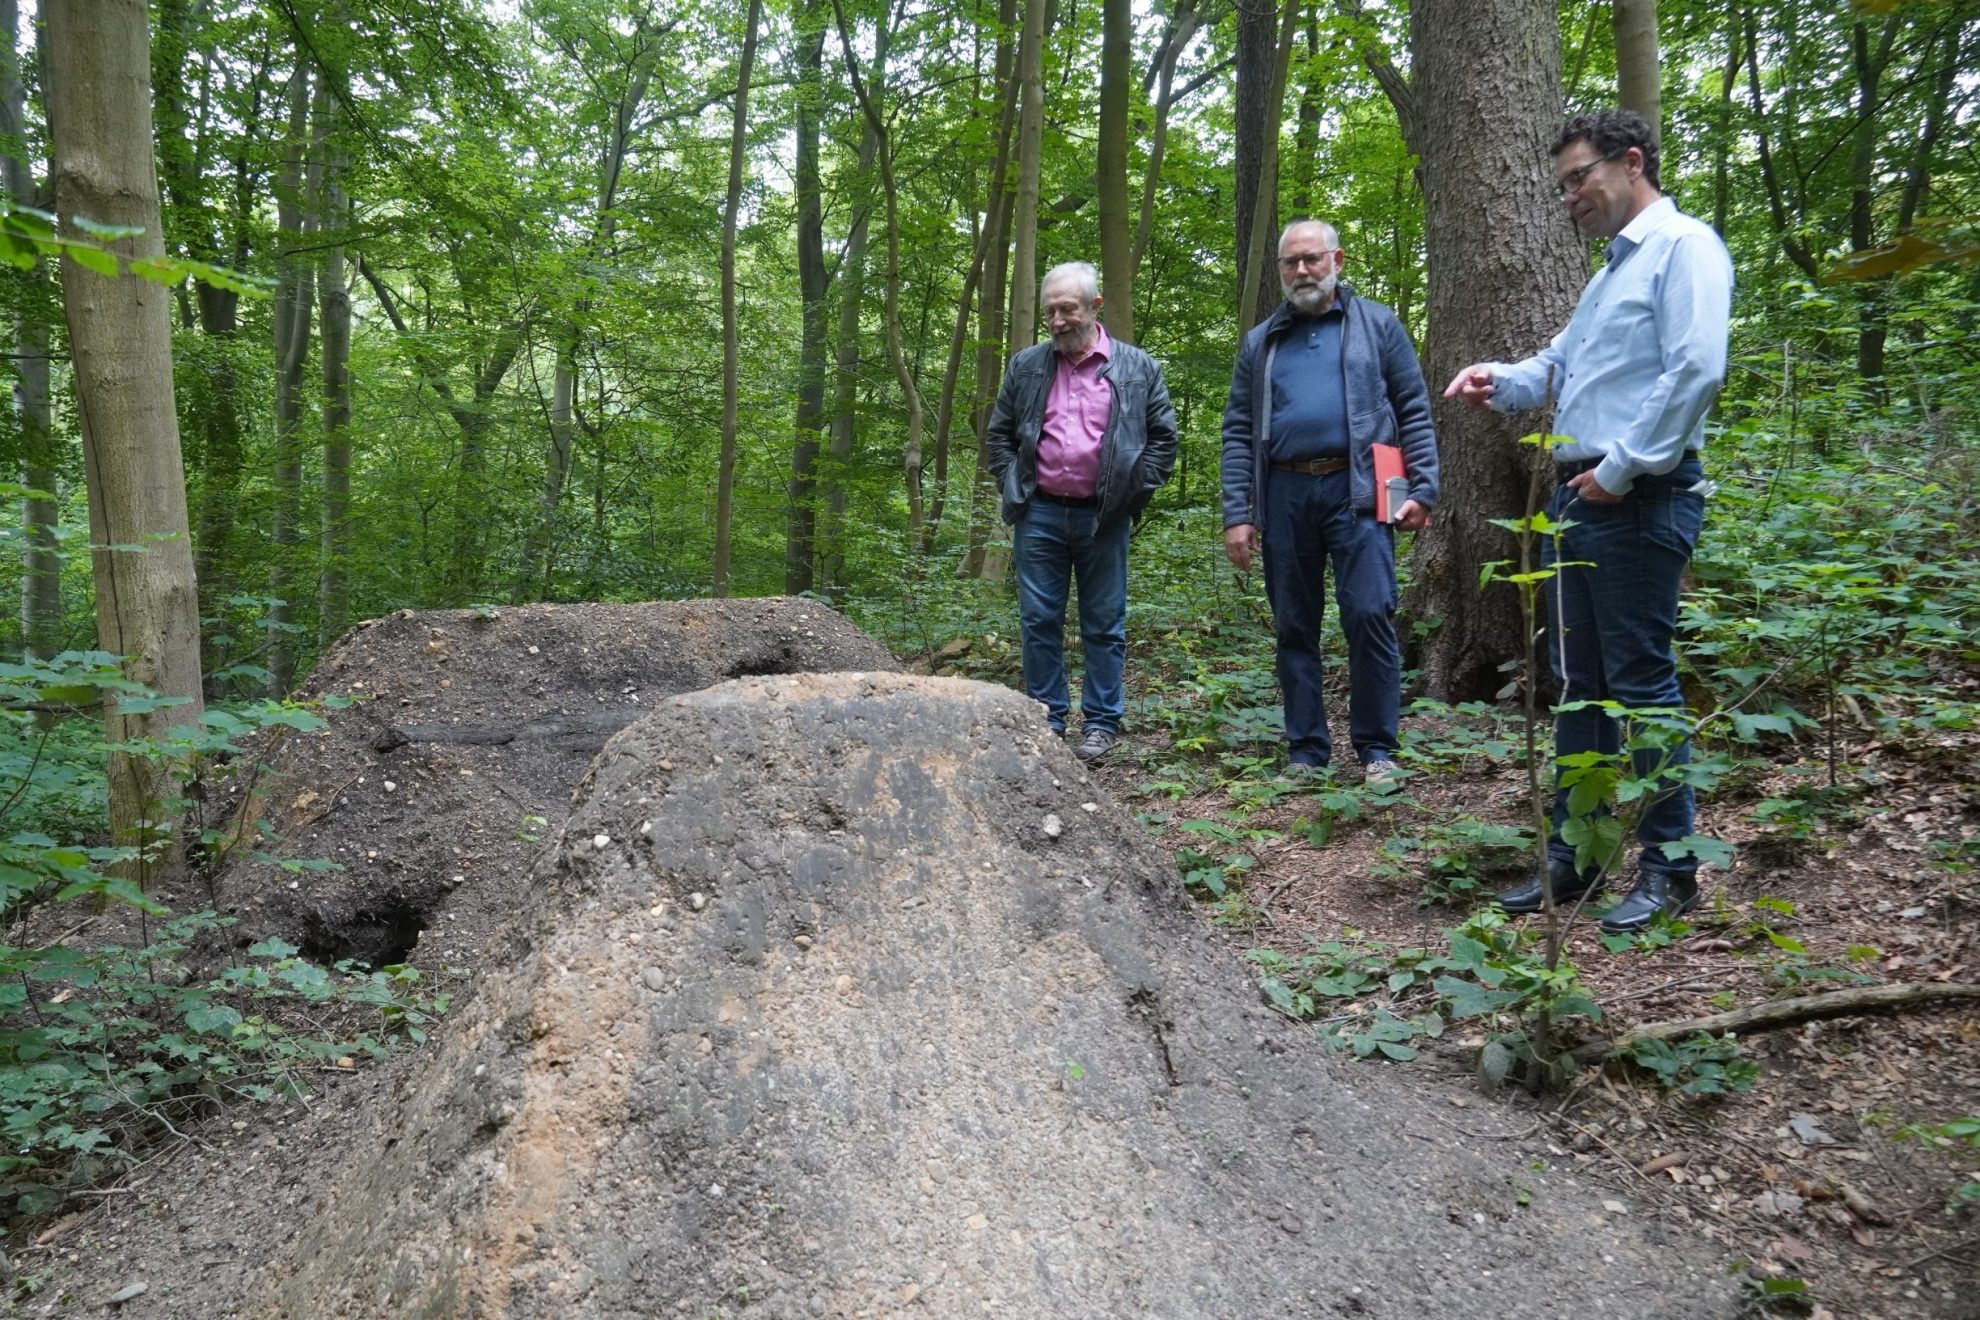 Eilenberger, Waldfreund und Timm besichtigen die wilden Trails im Wald